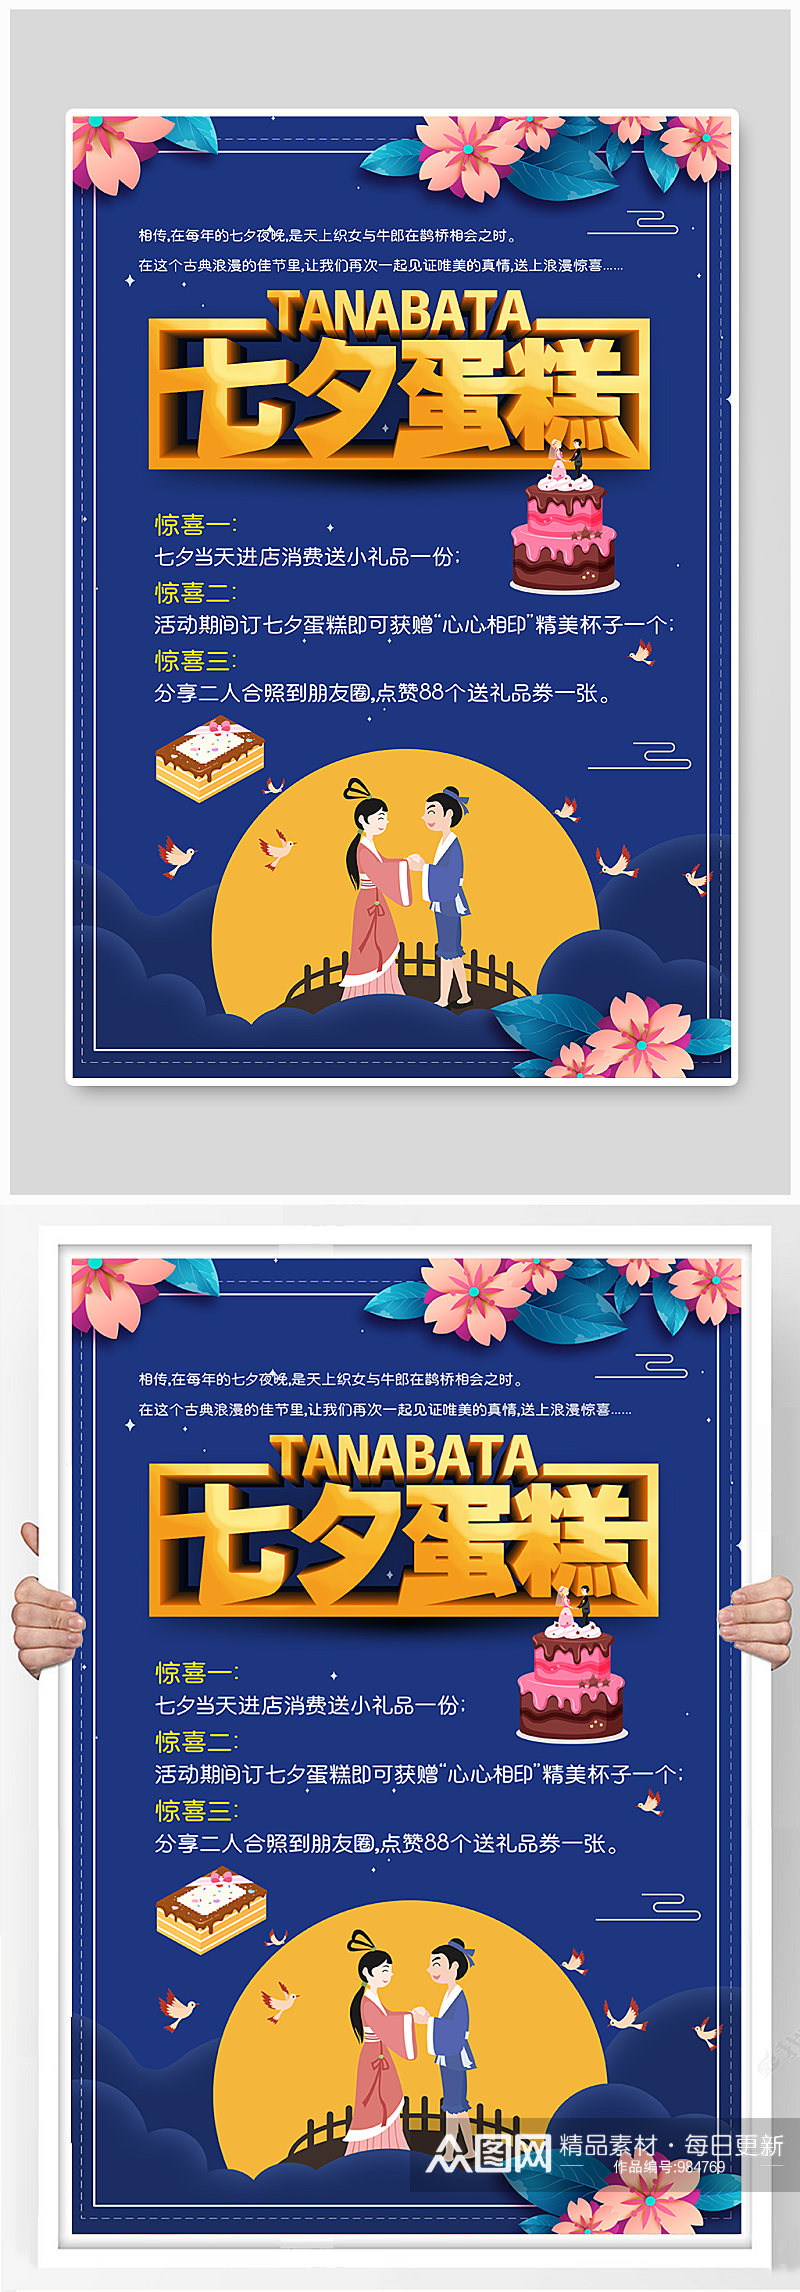 七夕节蛋糕店促销活动海报设计素材